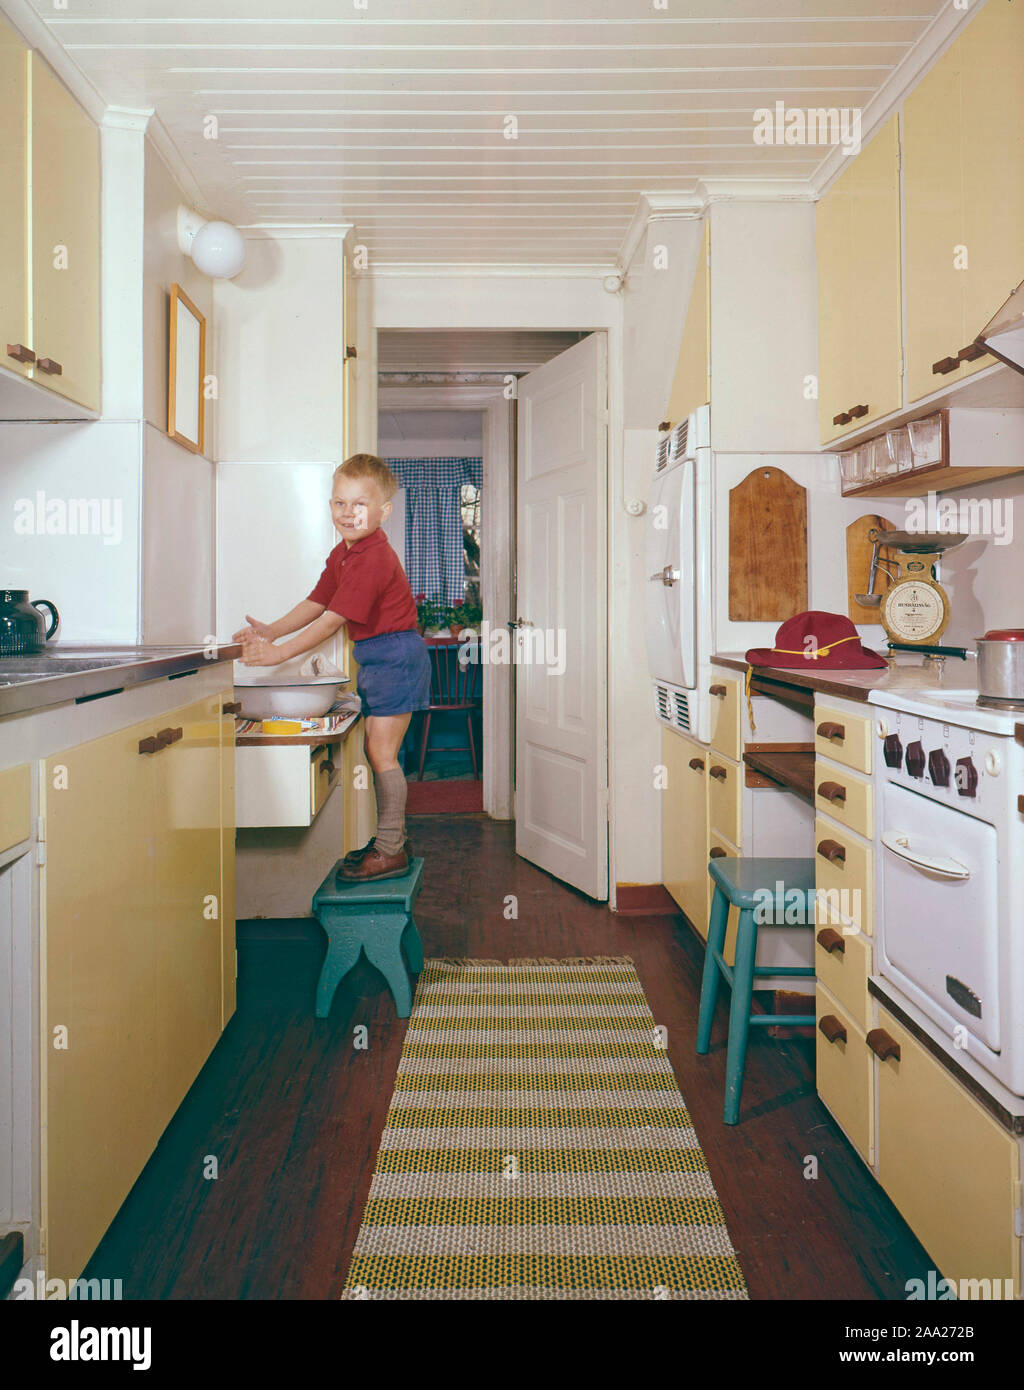 Cucina del 50s-60s. Un ragazzo s i piedi su uno sgabello e si lava le mani. La cucina interna è tipica con colori di giallo e gli oggetti visibili dal tempo. La Svezia degli anni cinquanta anni sessanta Foto Stock